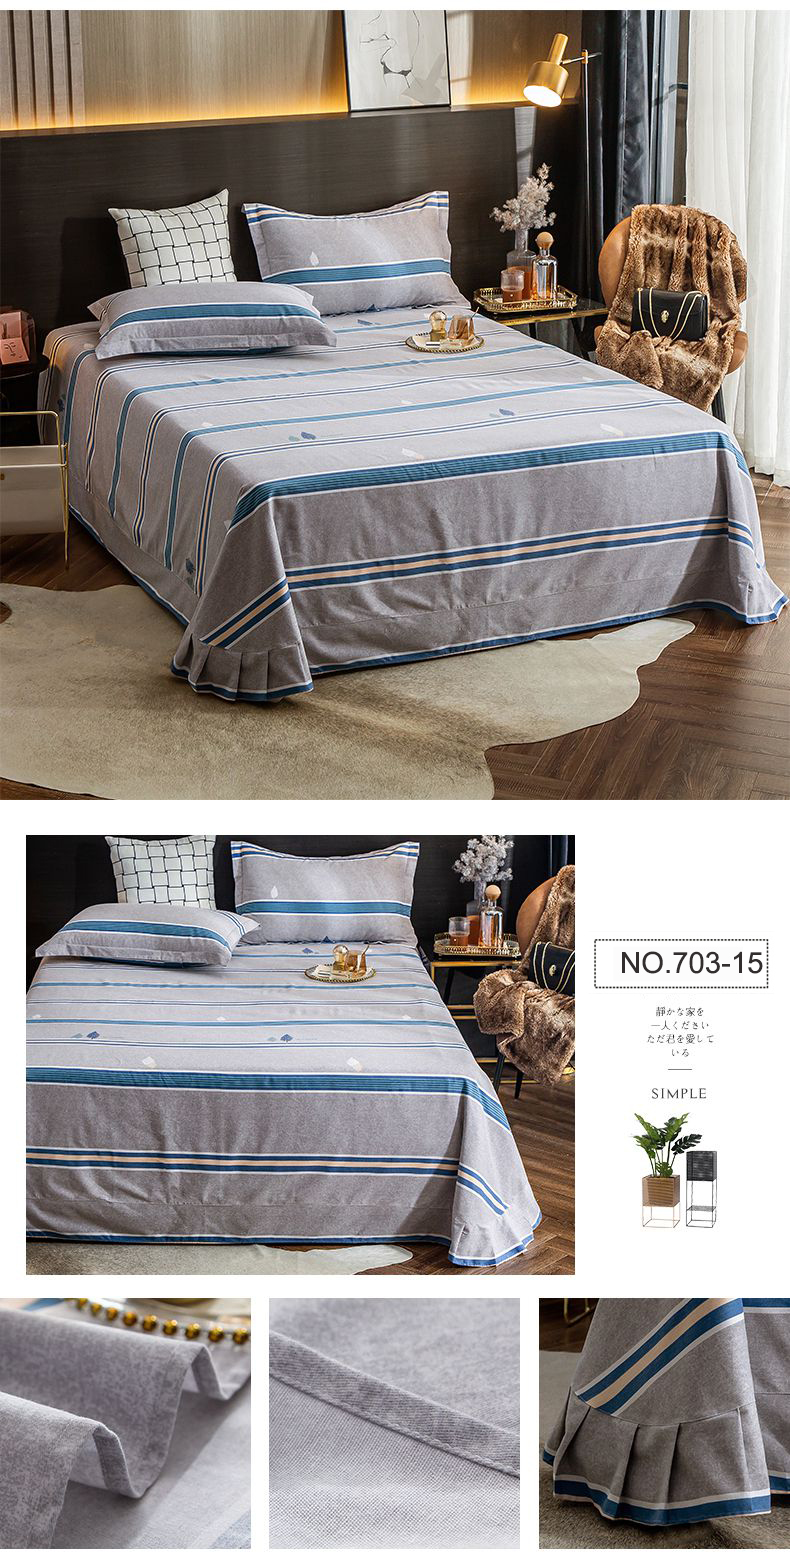 Sheet Set Bed Linen Factory